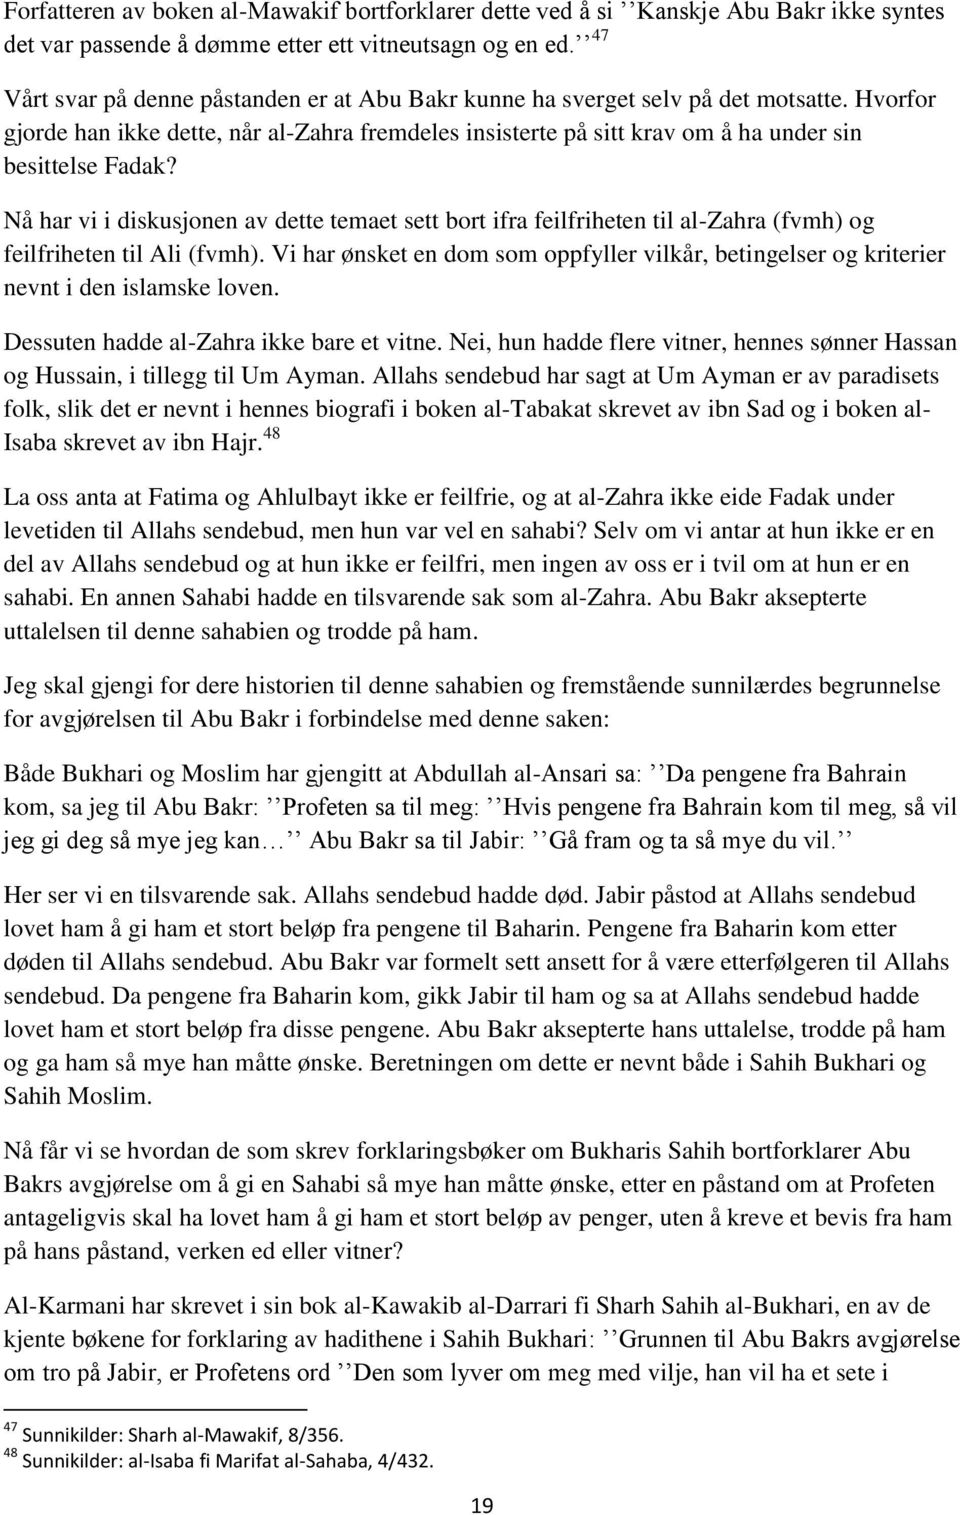 Nå har vi i diskusjonen av dette temaet sett bort ifra feilfriheten til al-zahra (fvmh) og feilfriheten til Ali (fvmh).